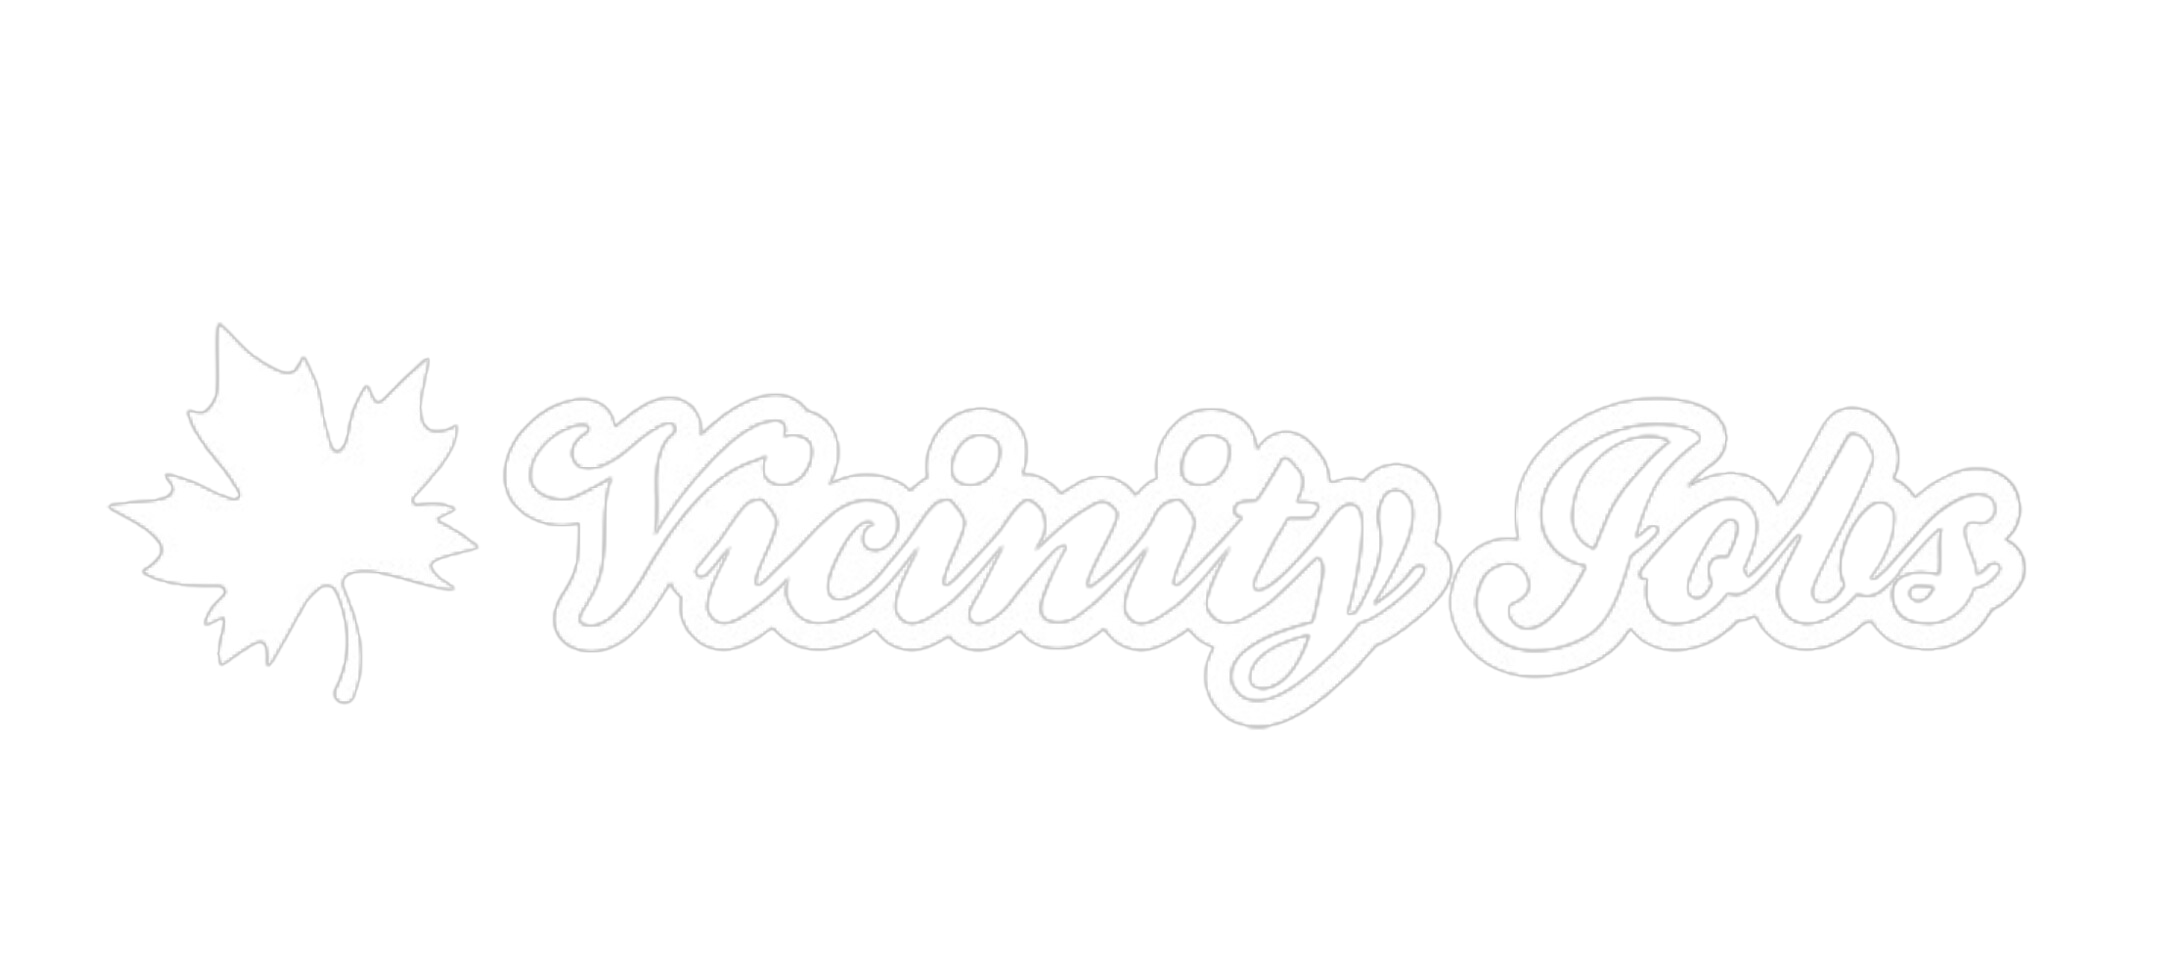 Vicinity Jobs Logo